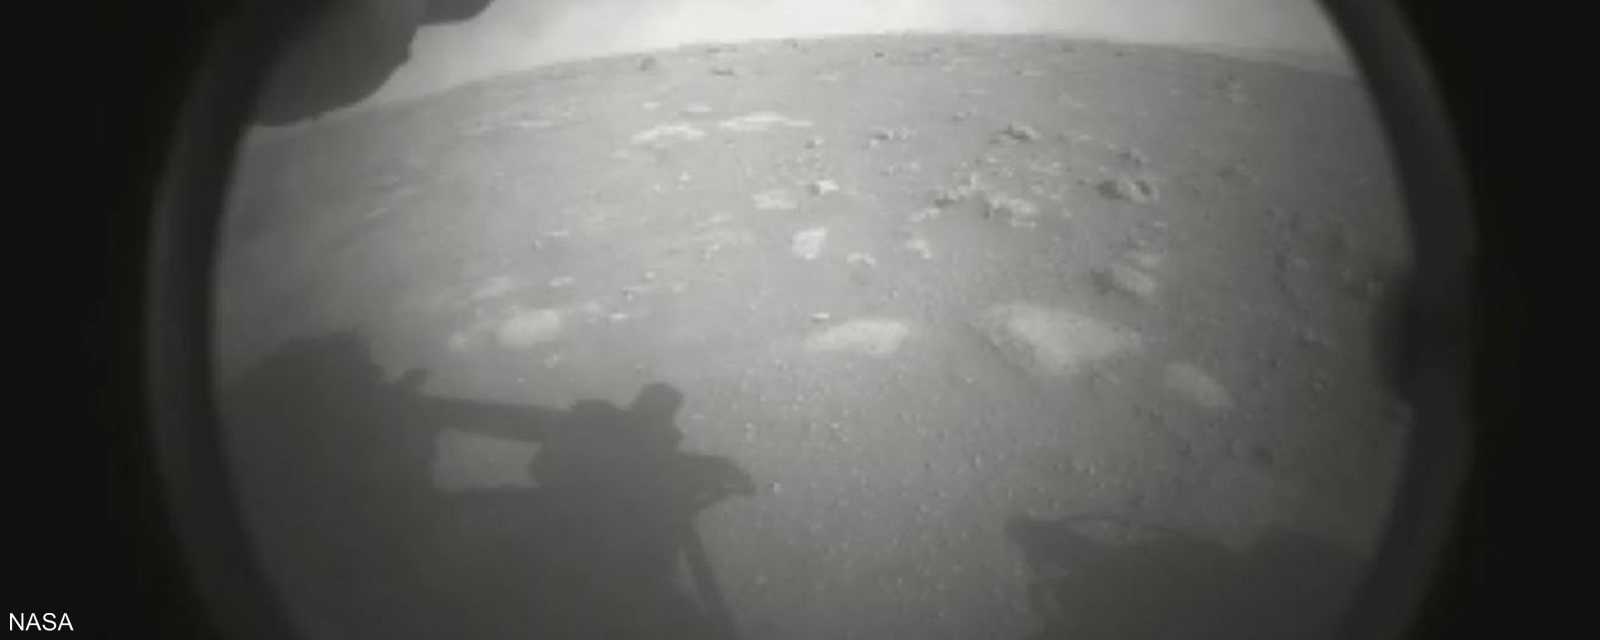 الصورة الأولى للهبوط على المريخ